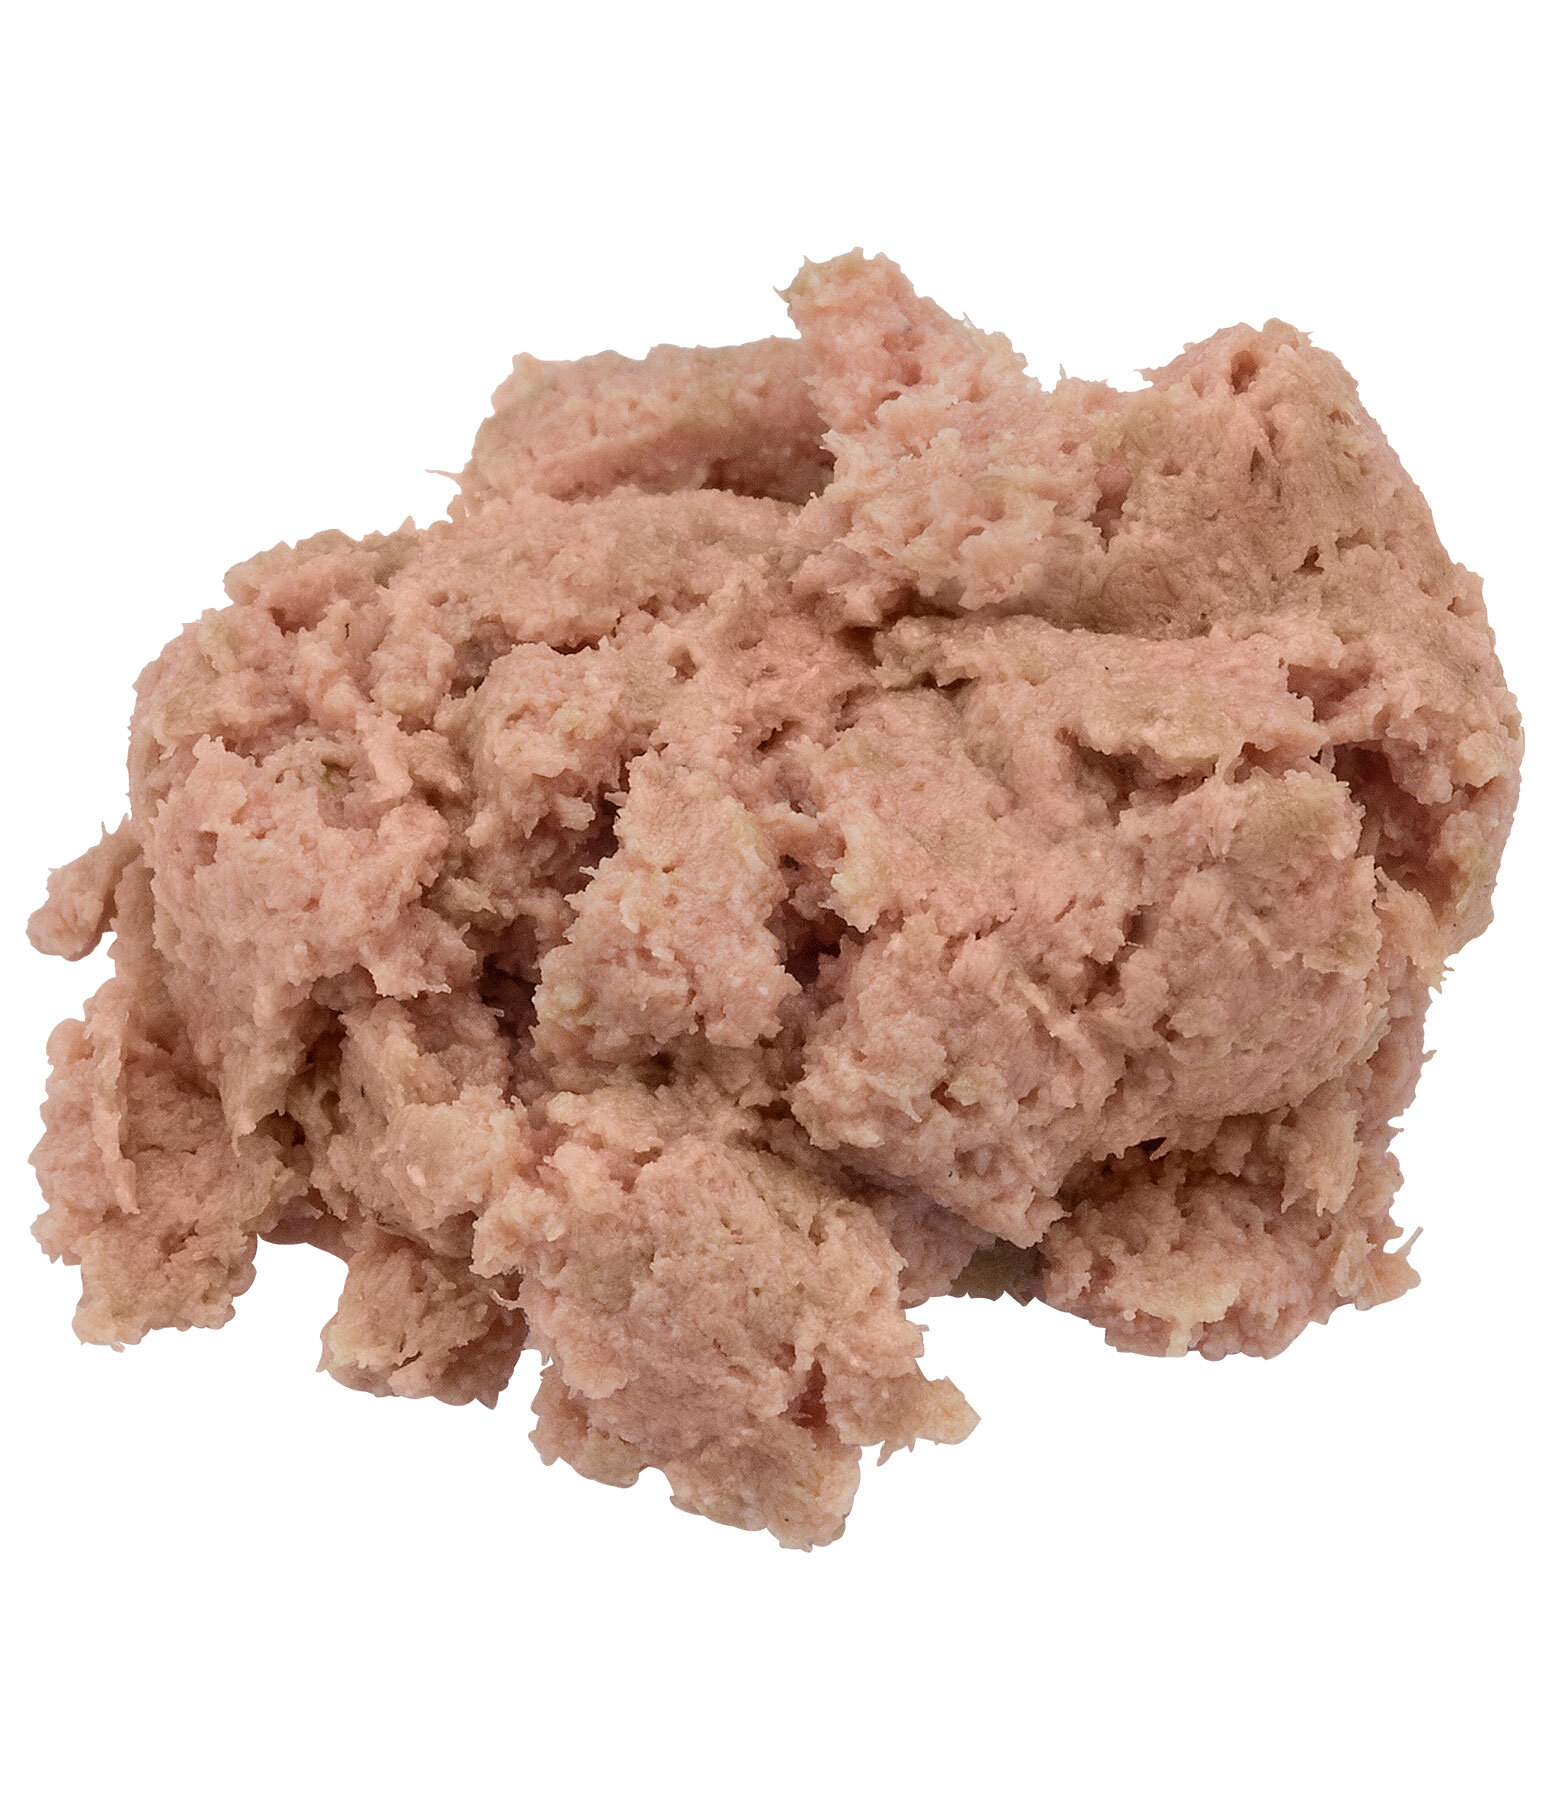 Delikatess Liver Sausage Dog Snack